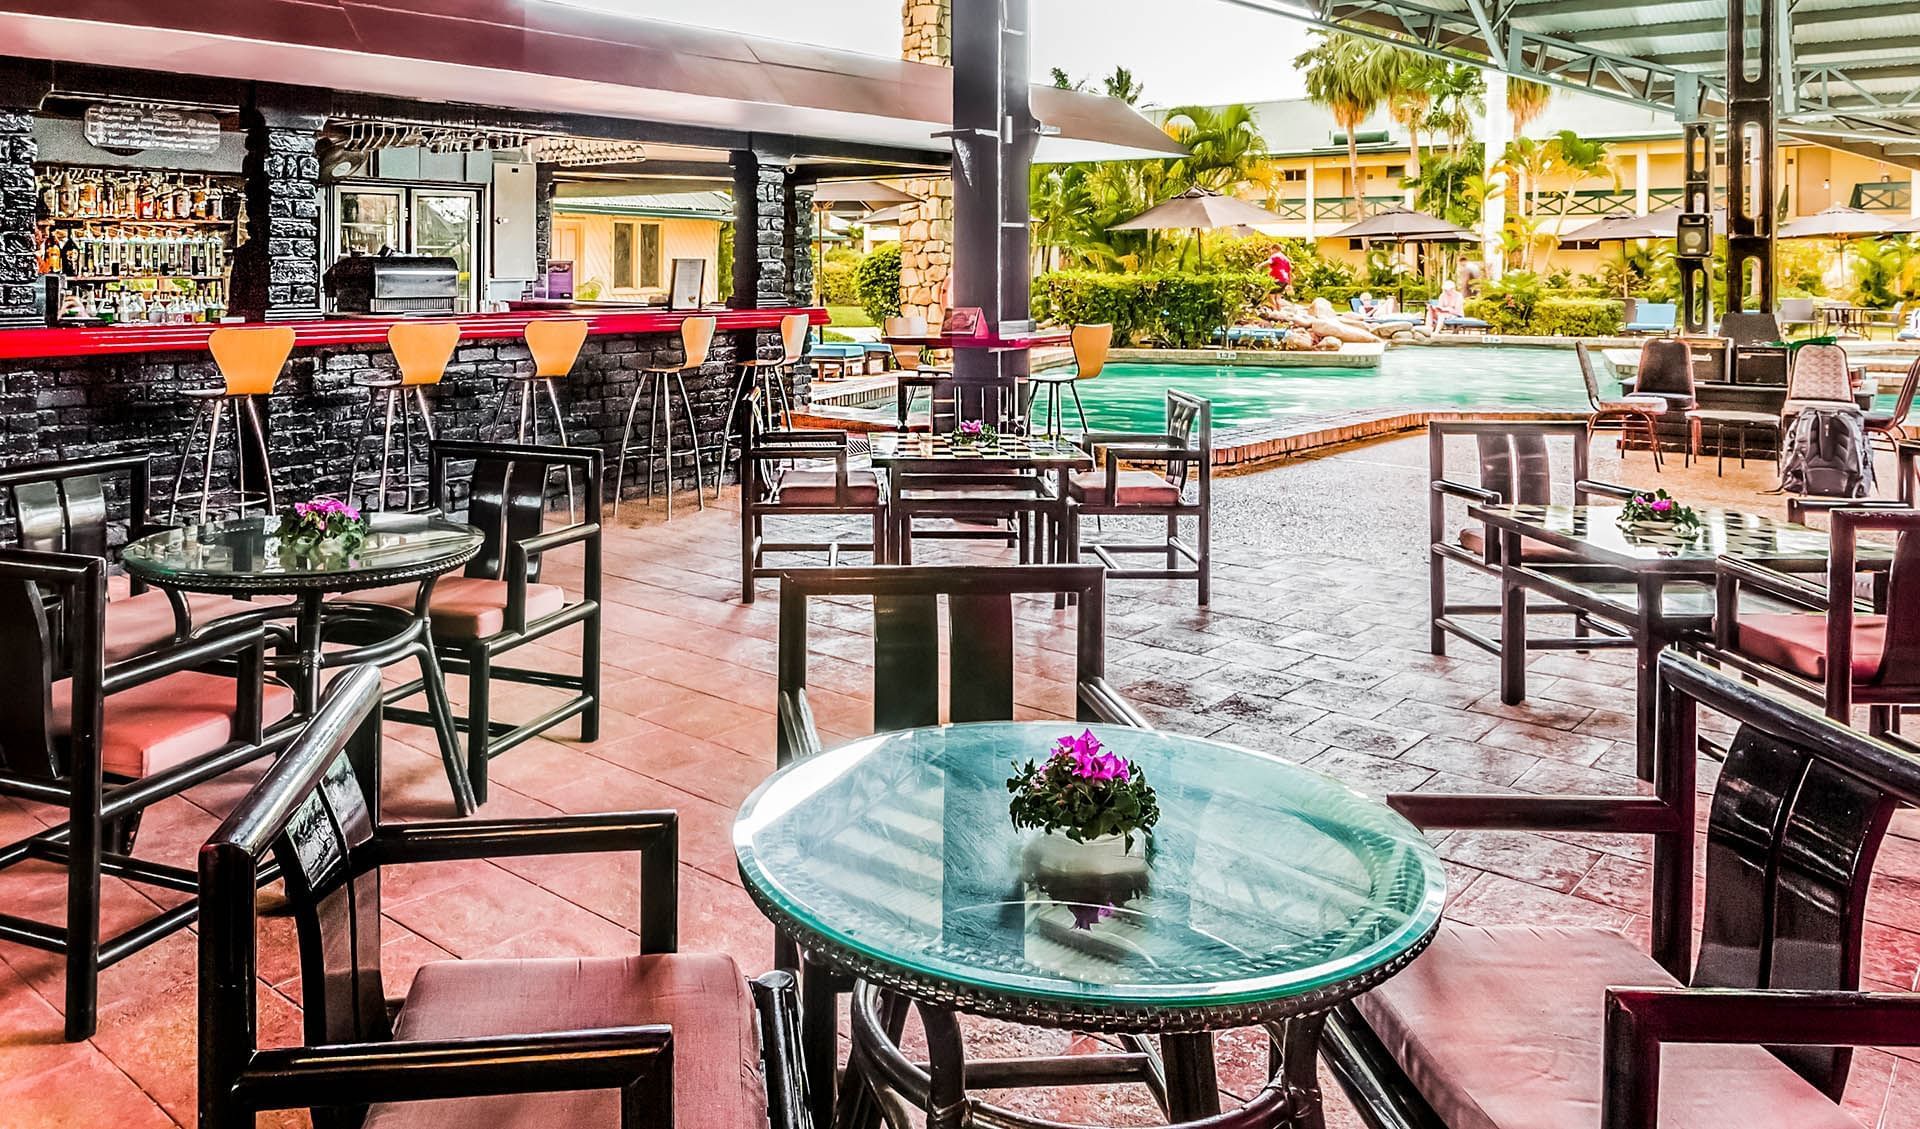 Seating arrangements in Poolside Bar at Tokatoka Resort